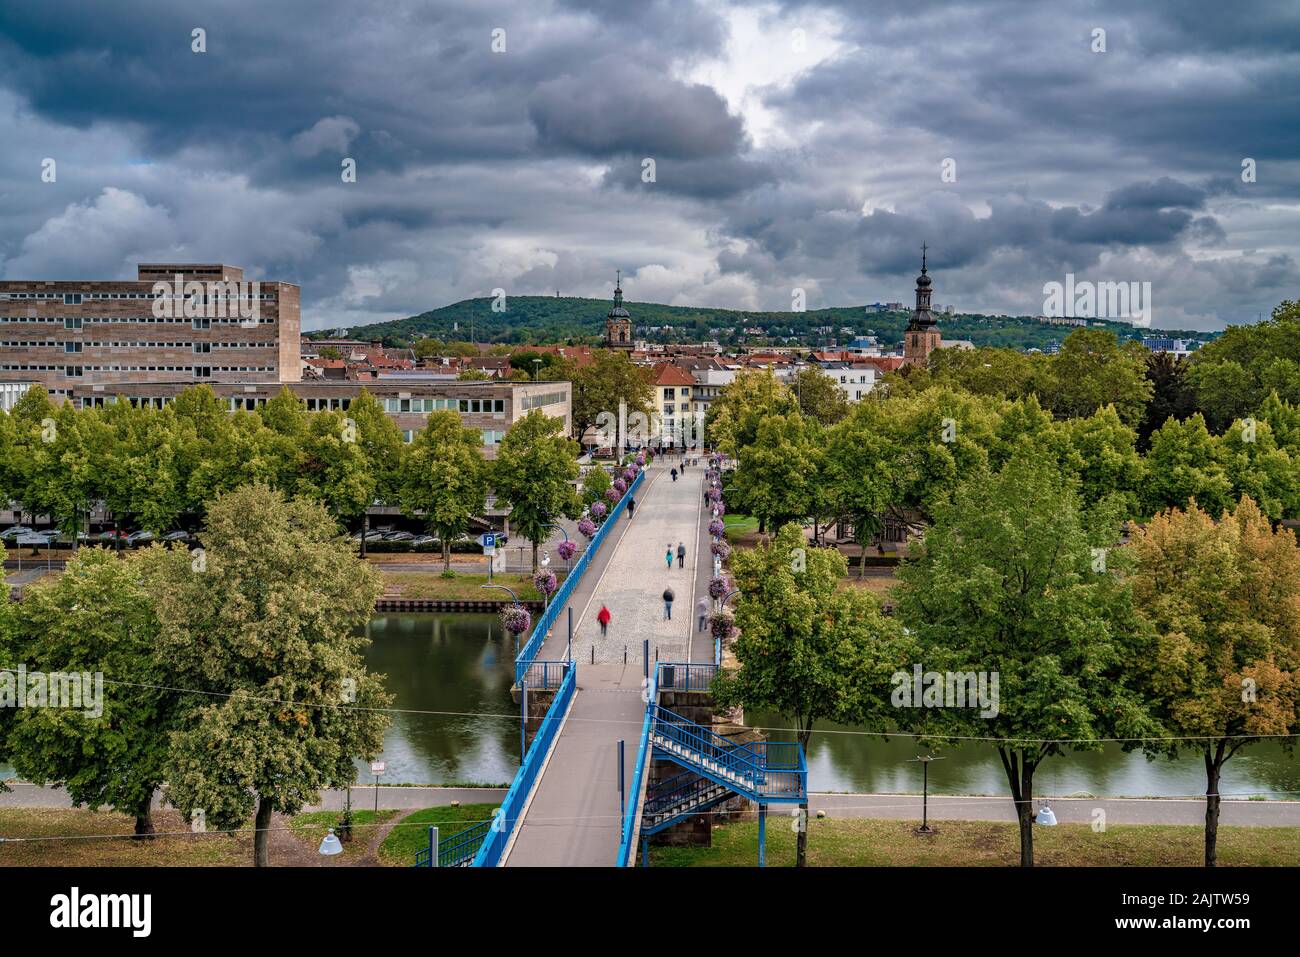 SAARBRUCKEN, Alemania - 23 de septiembre: Esta es una vista del Puente Viejo, un popular destino turístico a lo largo del Río Saar, el 23 de septiembre de 2019 en AEA Foto de stock